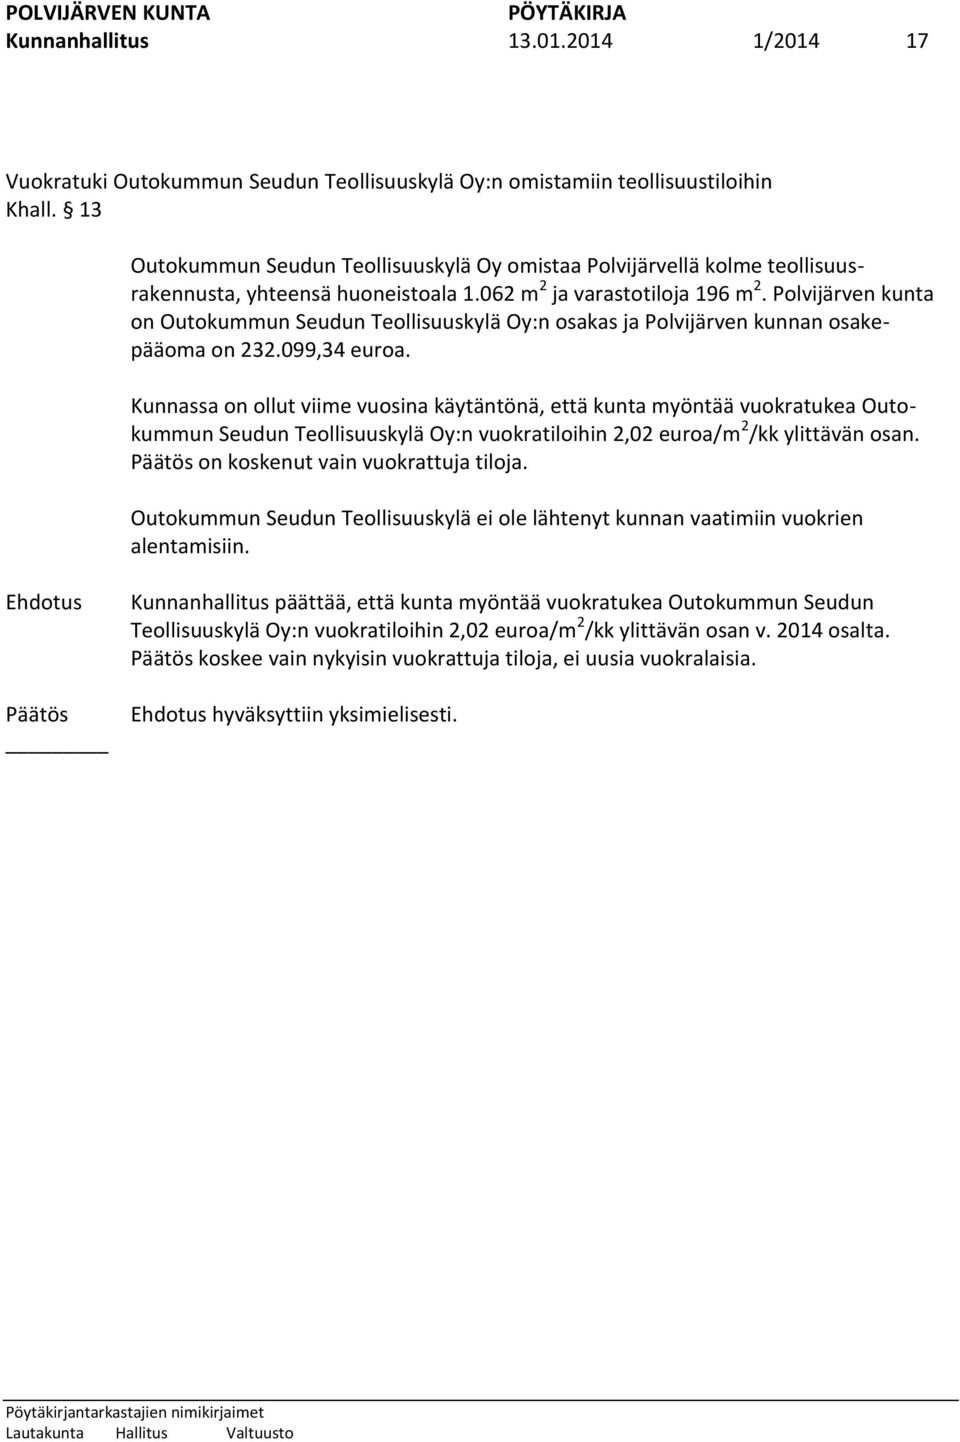 Polvijärven kunta on Outokummun Seudun Teollisuuskylä Oy:n osakas ja Polvijärven kunnan osakepääoma on 232.099,34 euroa.